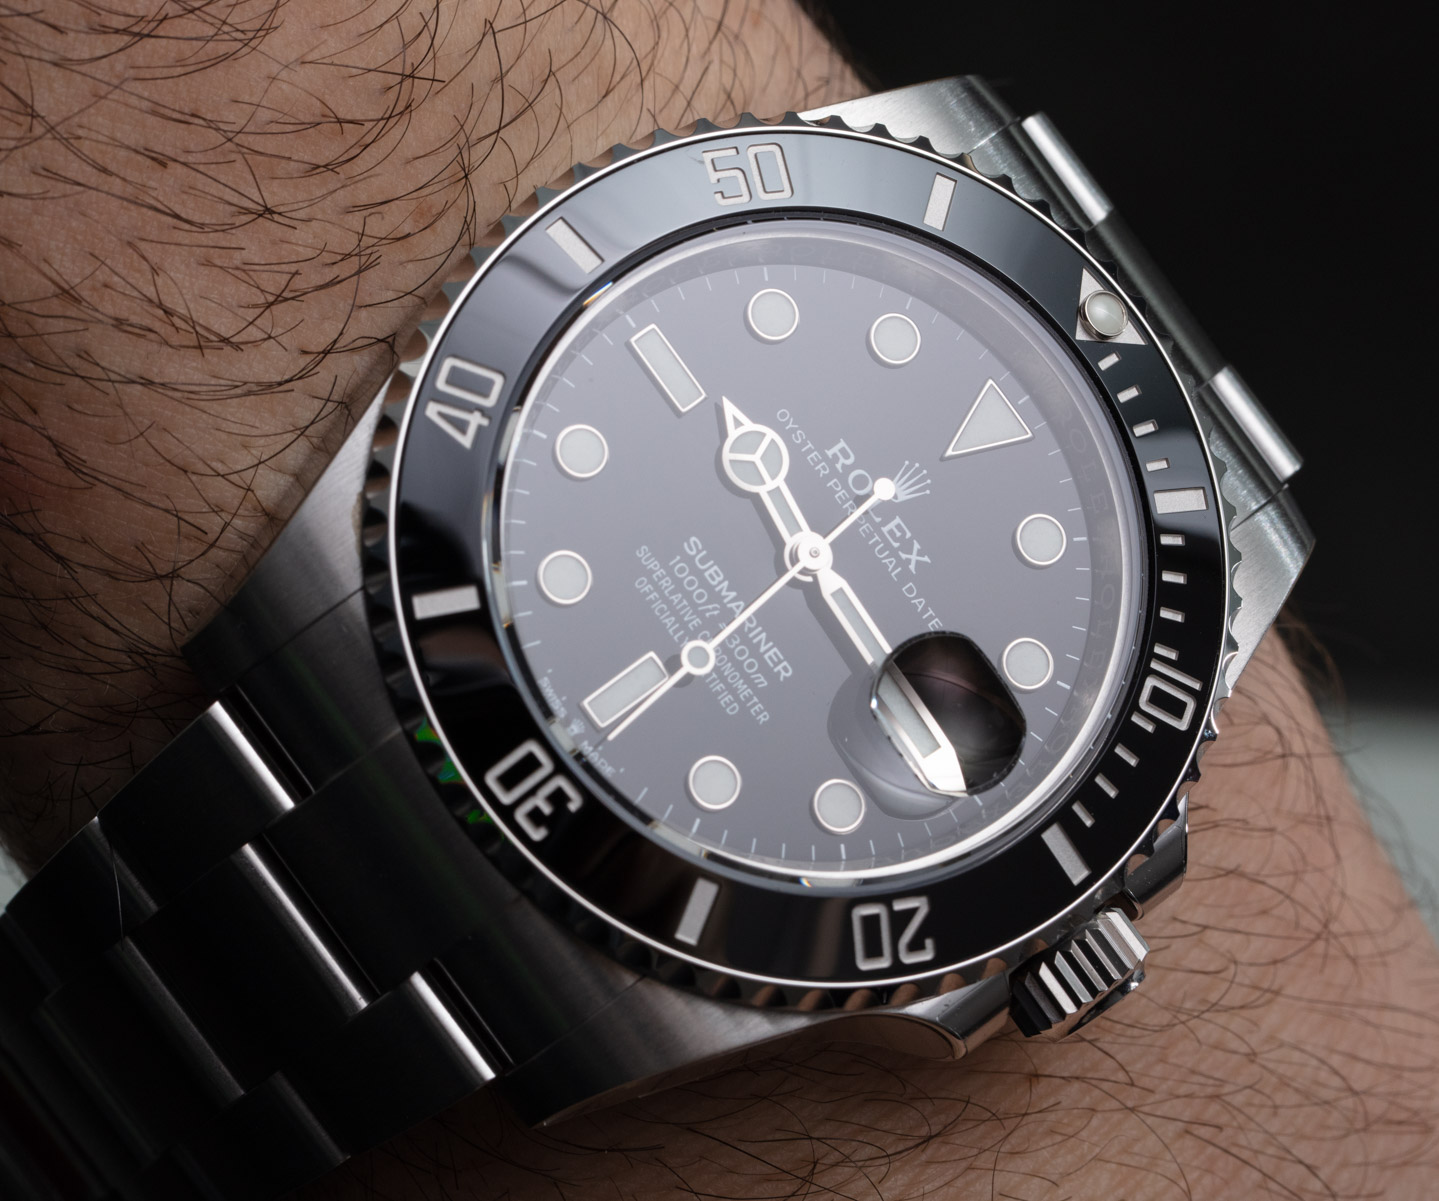 Hands-On: Rolex Submariner 126610LN Watch